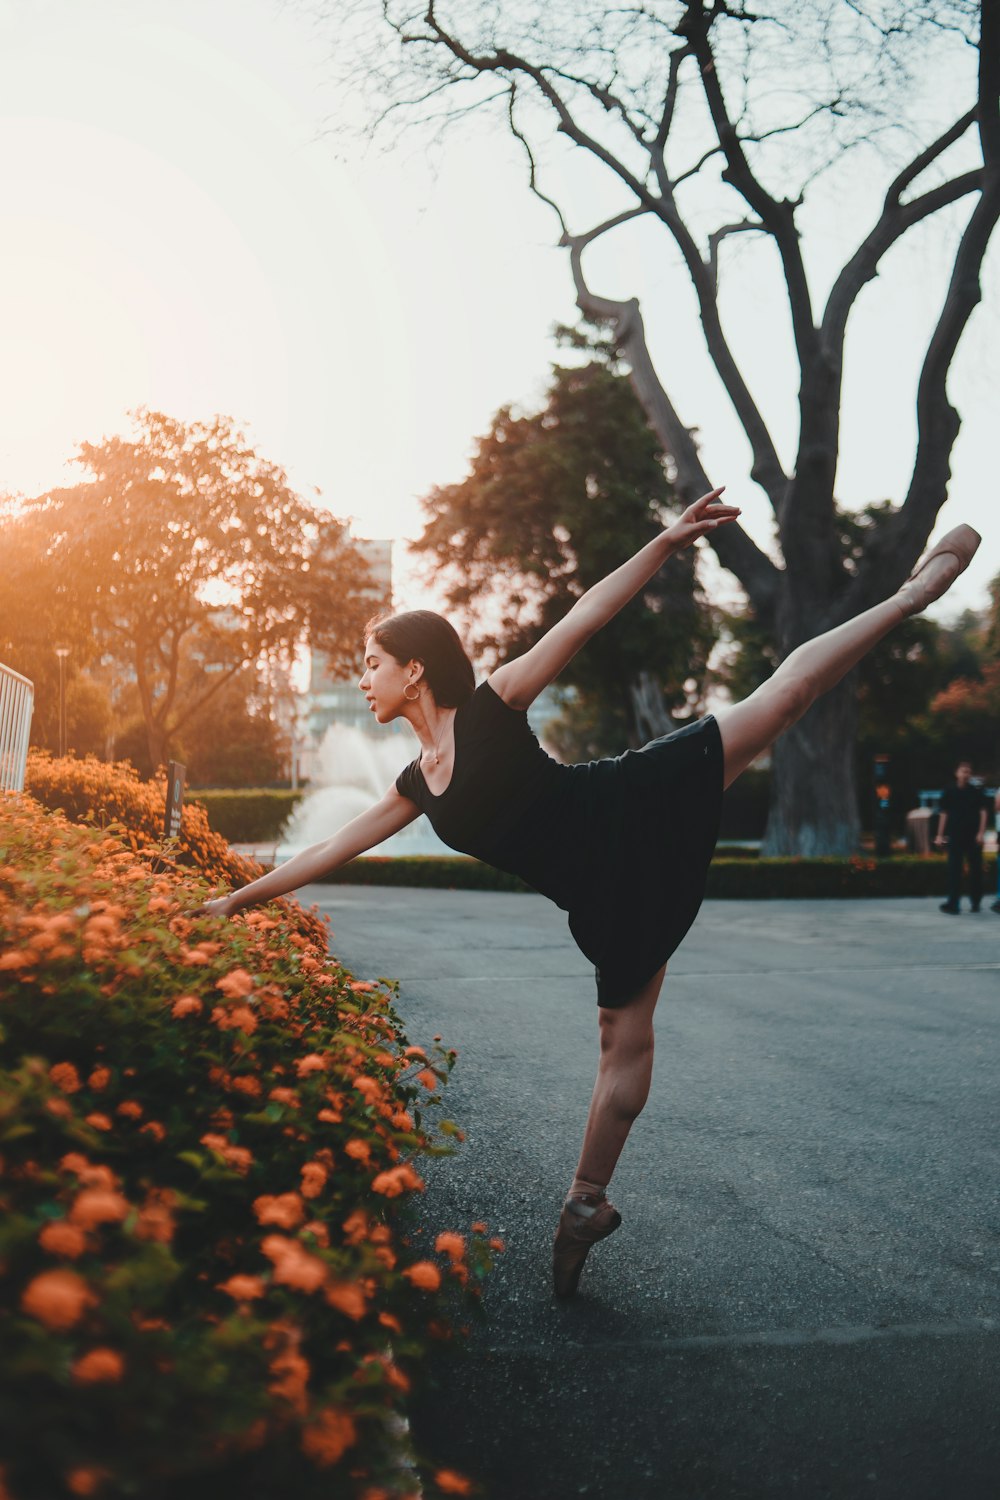 Frau tanzt Ballett in der Nähe von Blumen